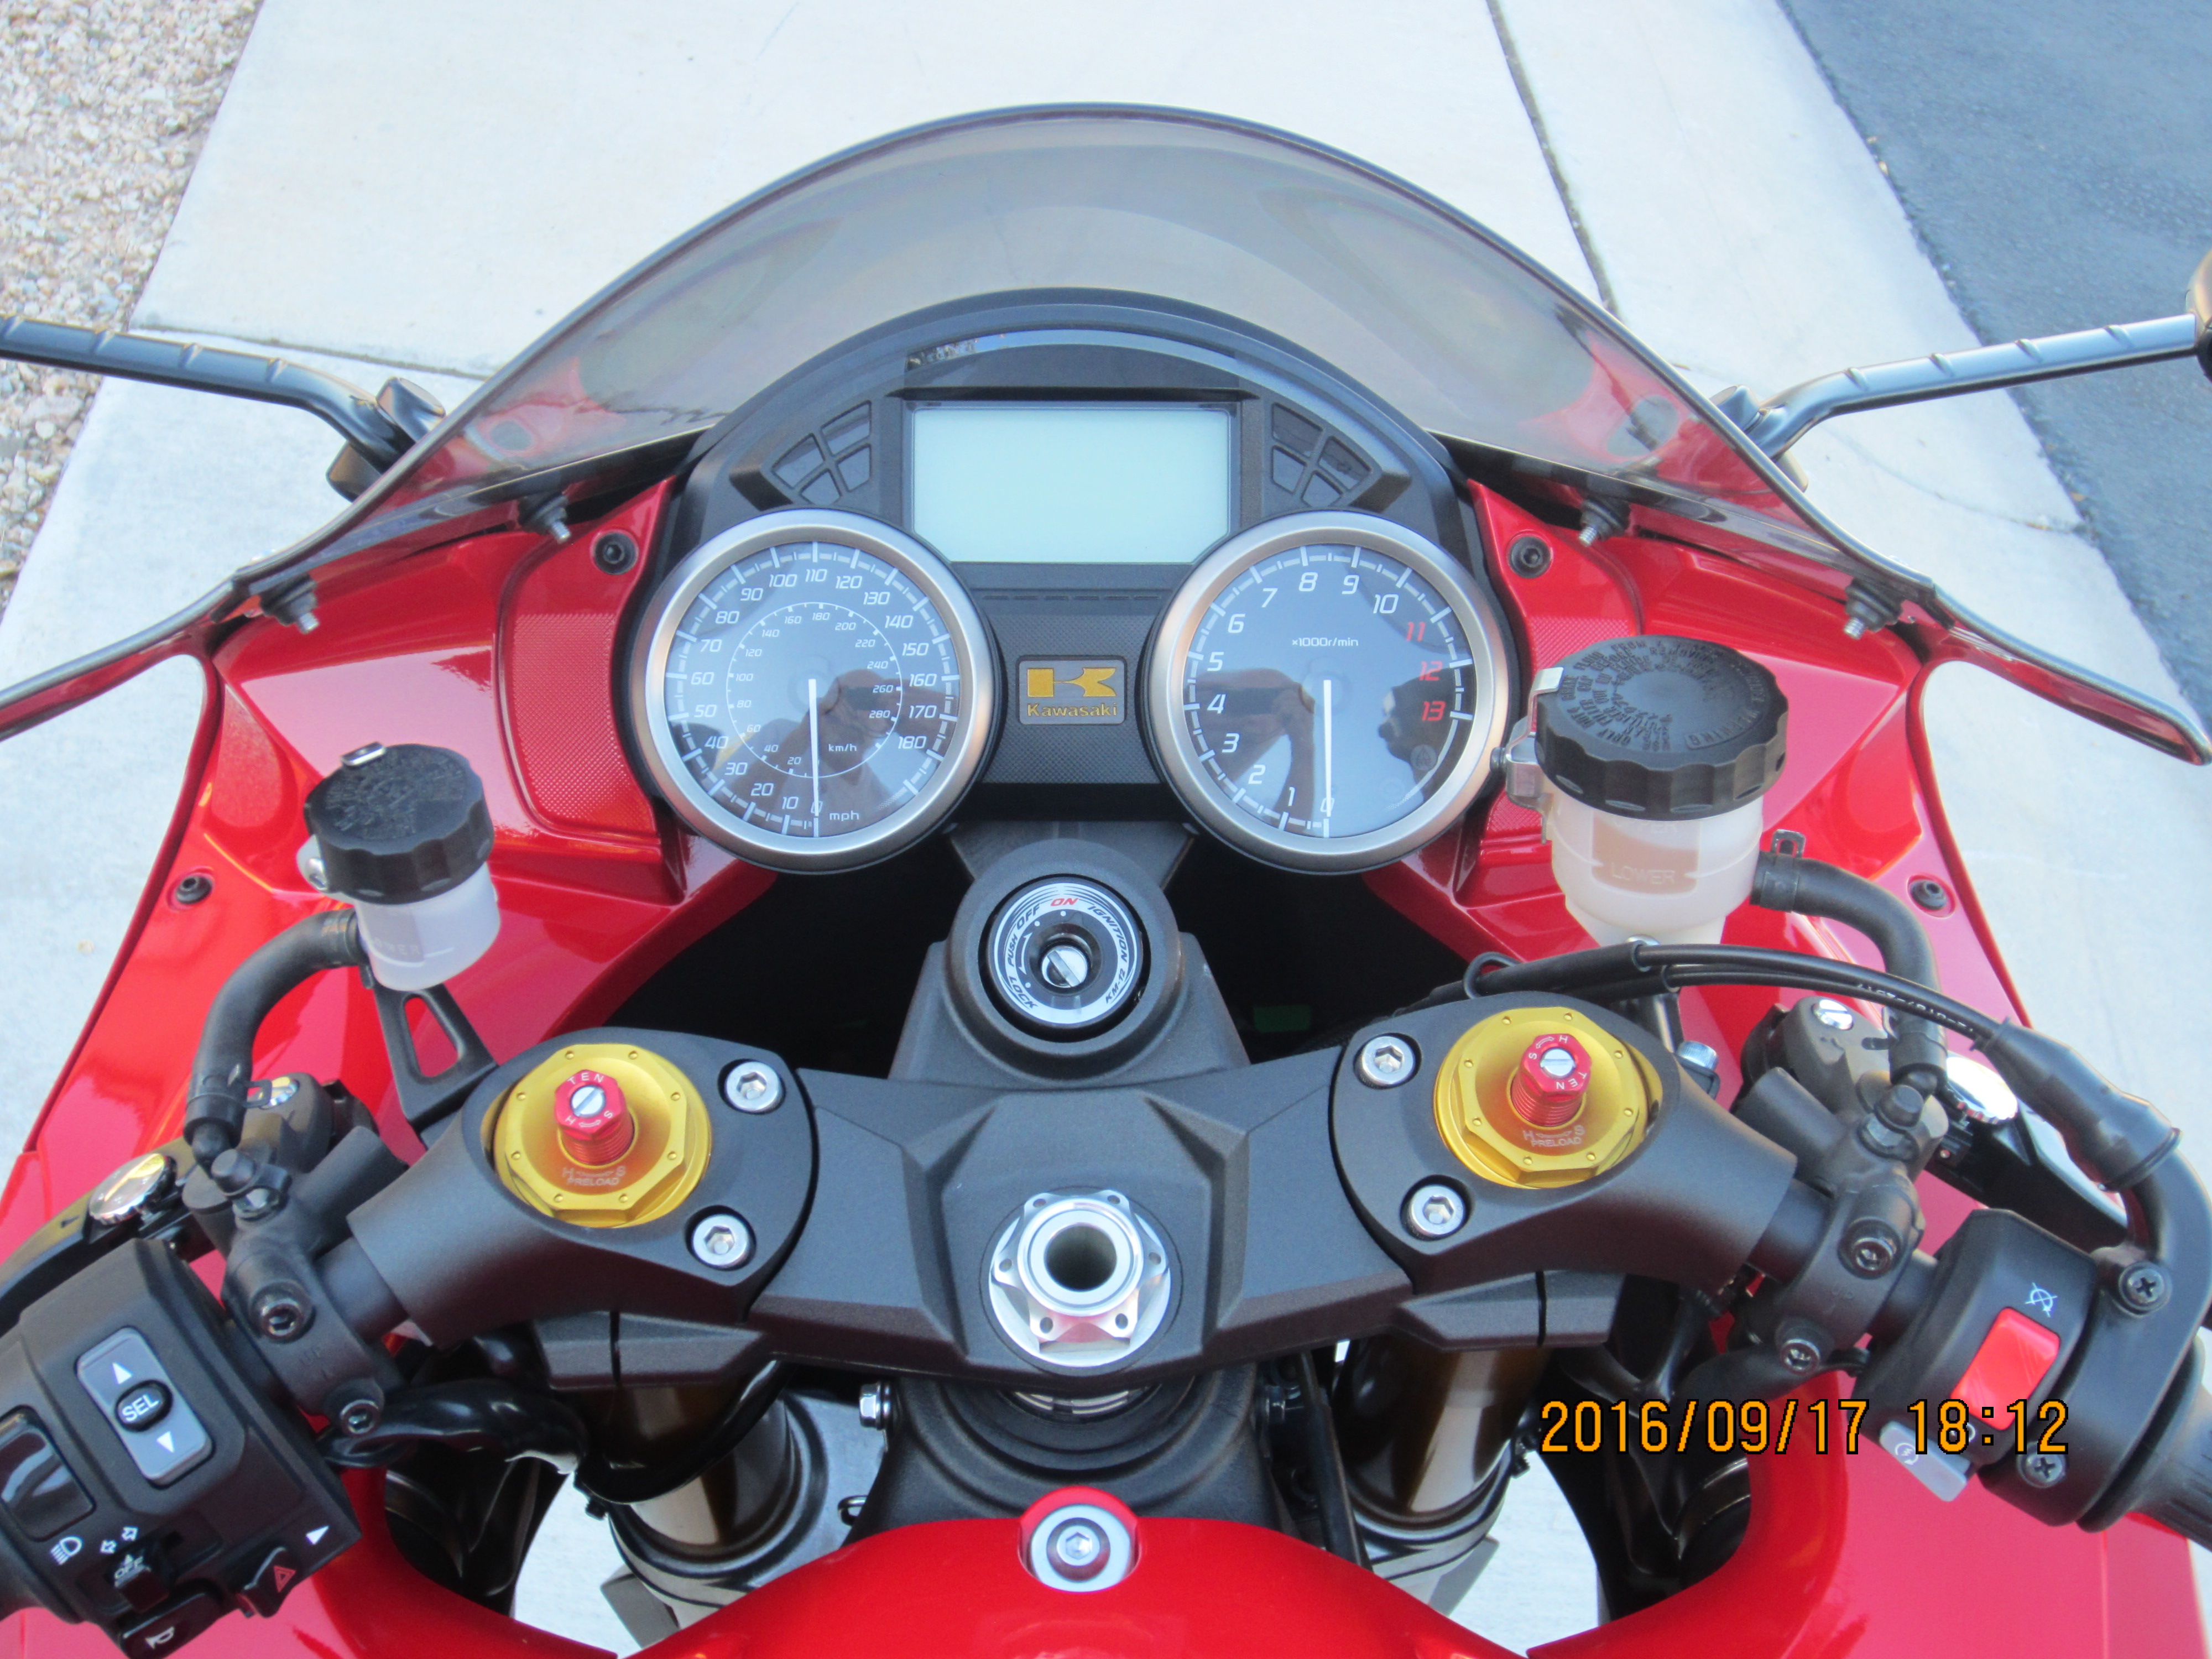 2015 ZX14 Rider View